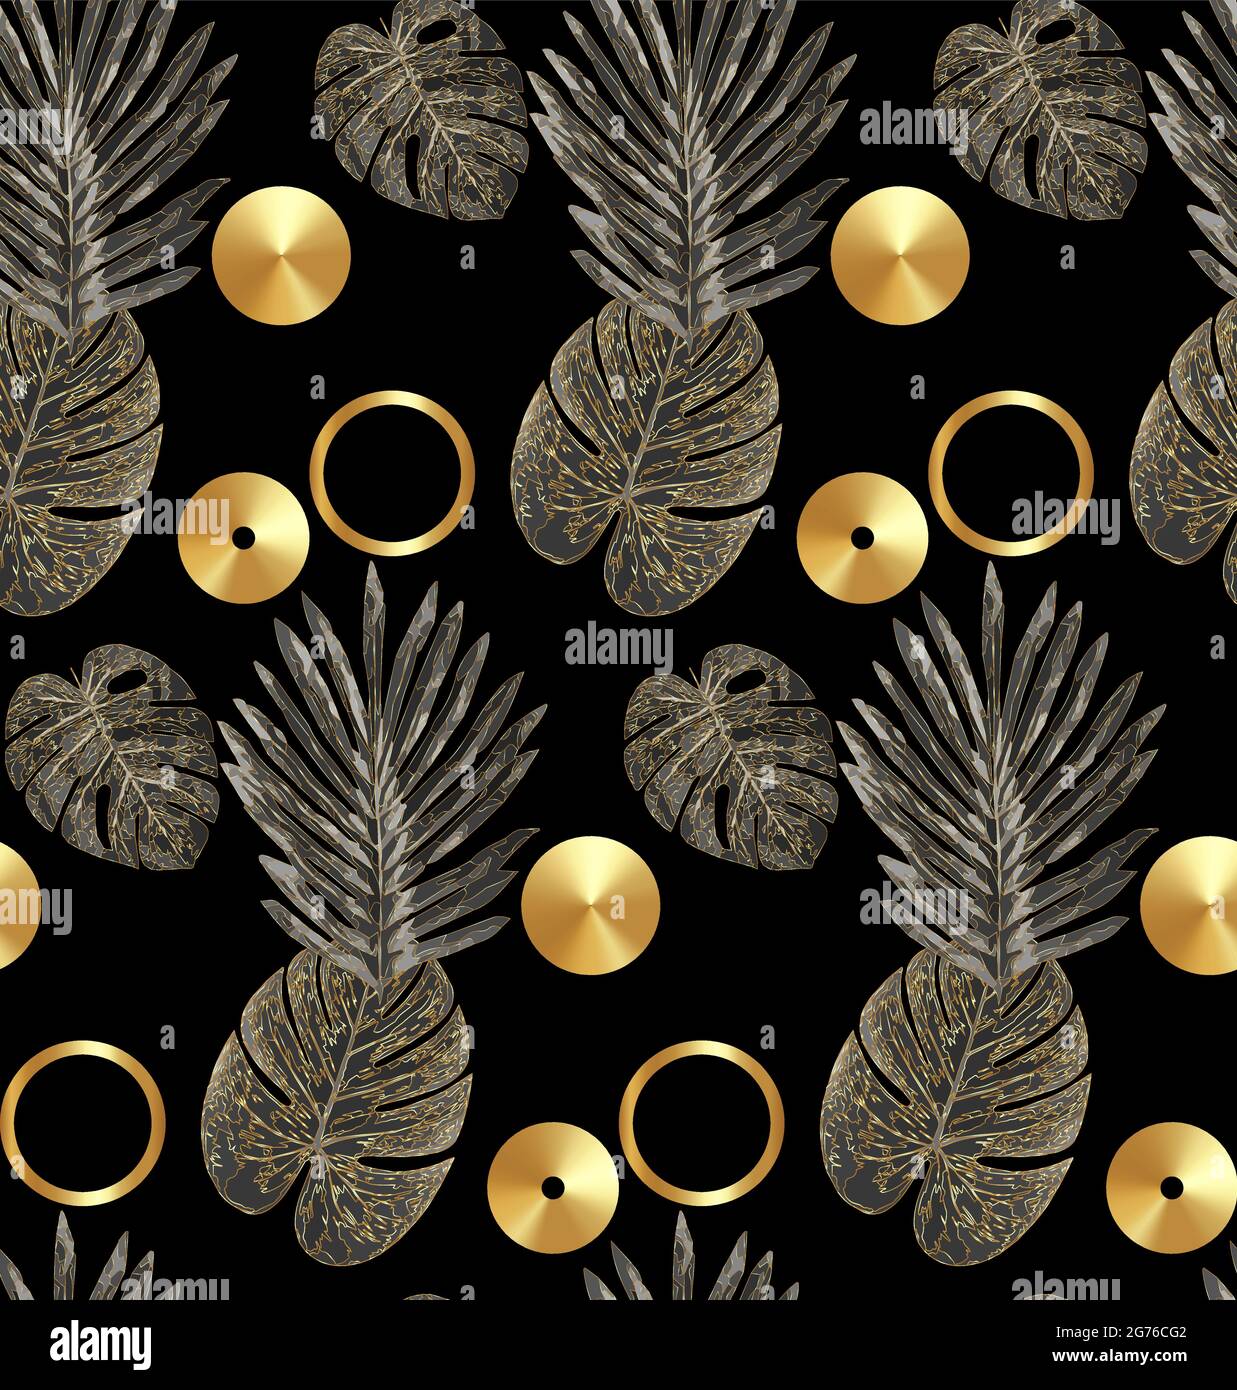 Luxus Gold und schwarze tropische Pflanze nahtlose Hintergrund Vektor. Blumenmuster mit goldener tropischer Palme, Monstera-Blatt, exotische Pflanze, Dschungelpflanzen, Stock Vektor